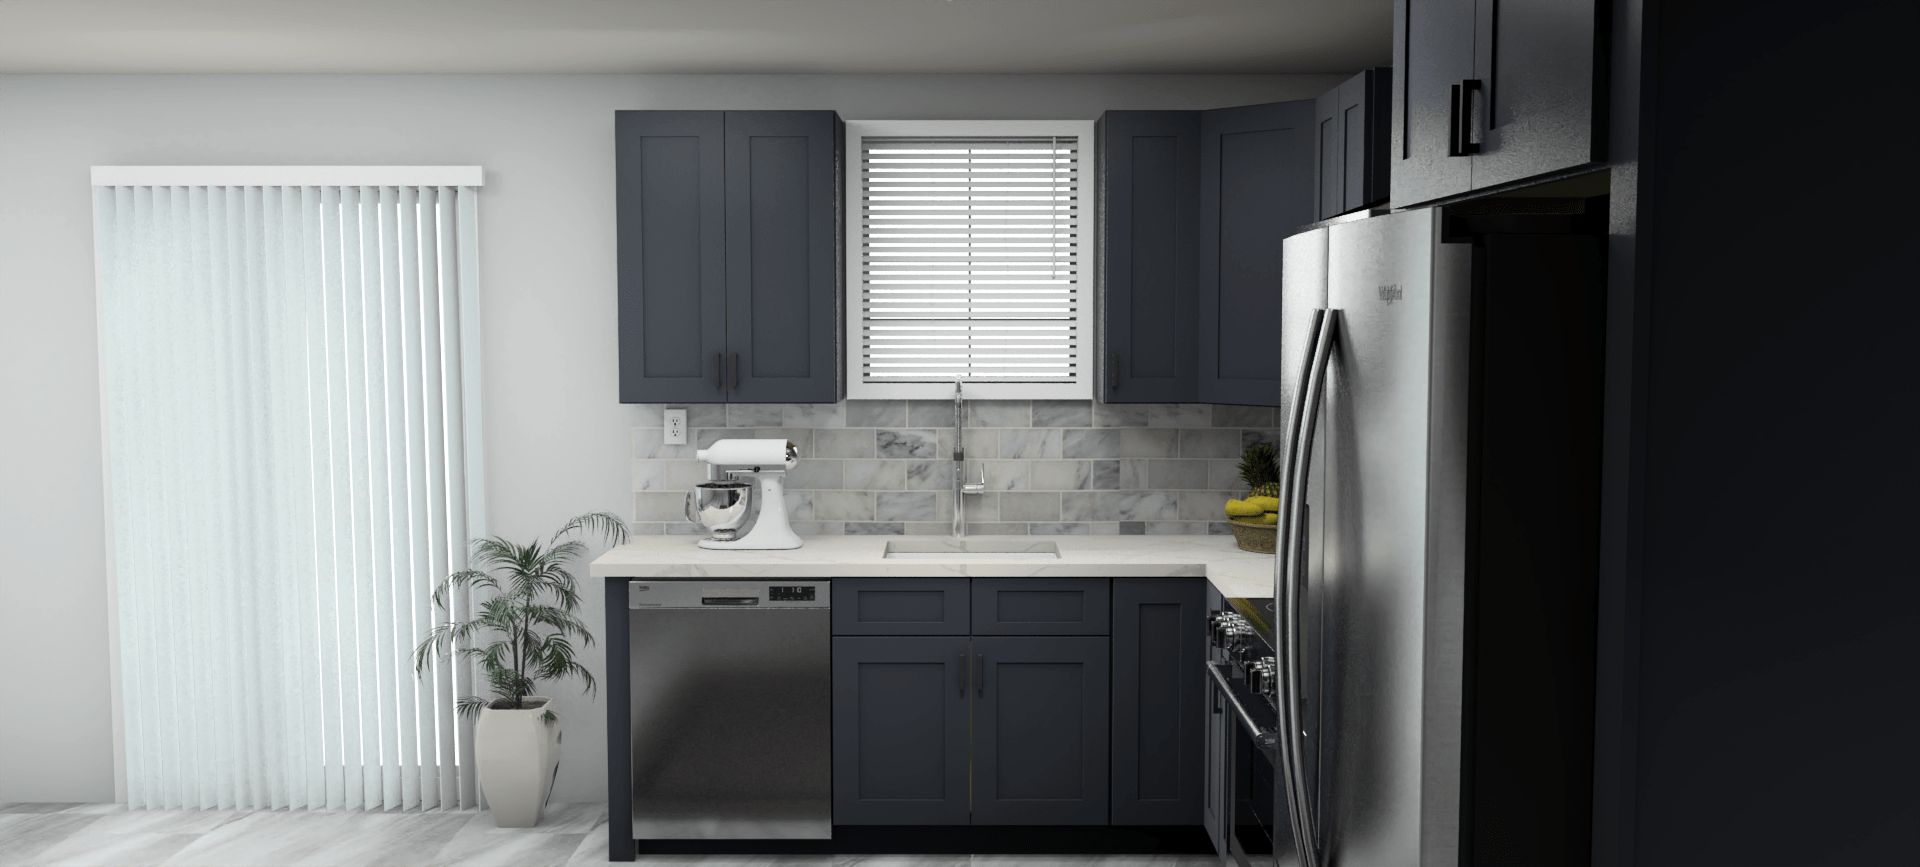 Fabuwood Allure Galaxy Indigo 8 x 12 L Shaped Kitchen Side Layout Photo